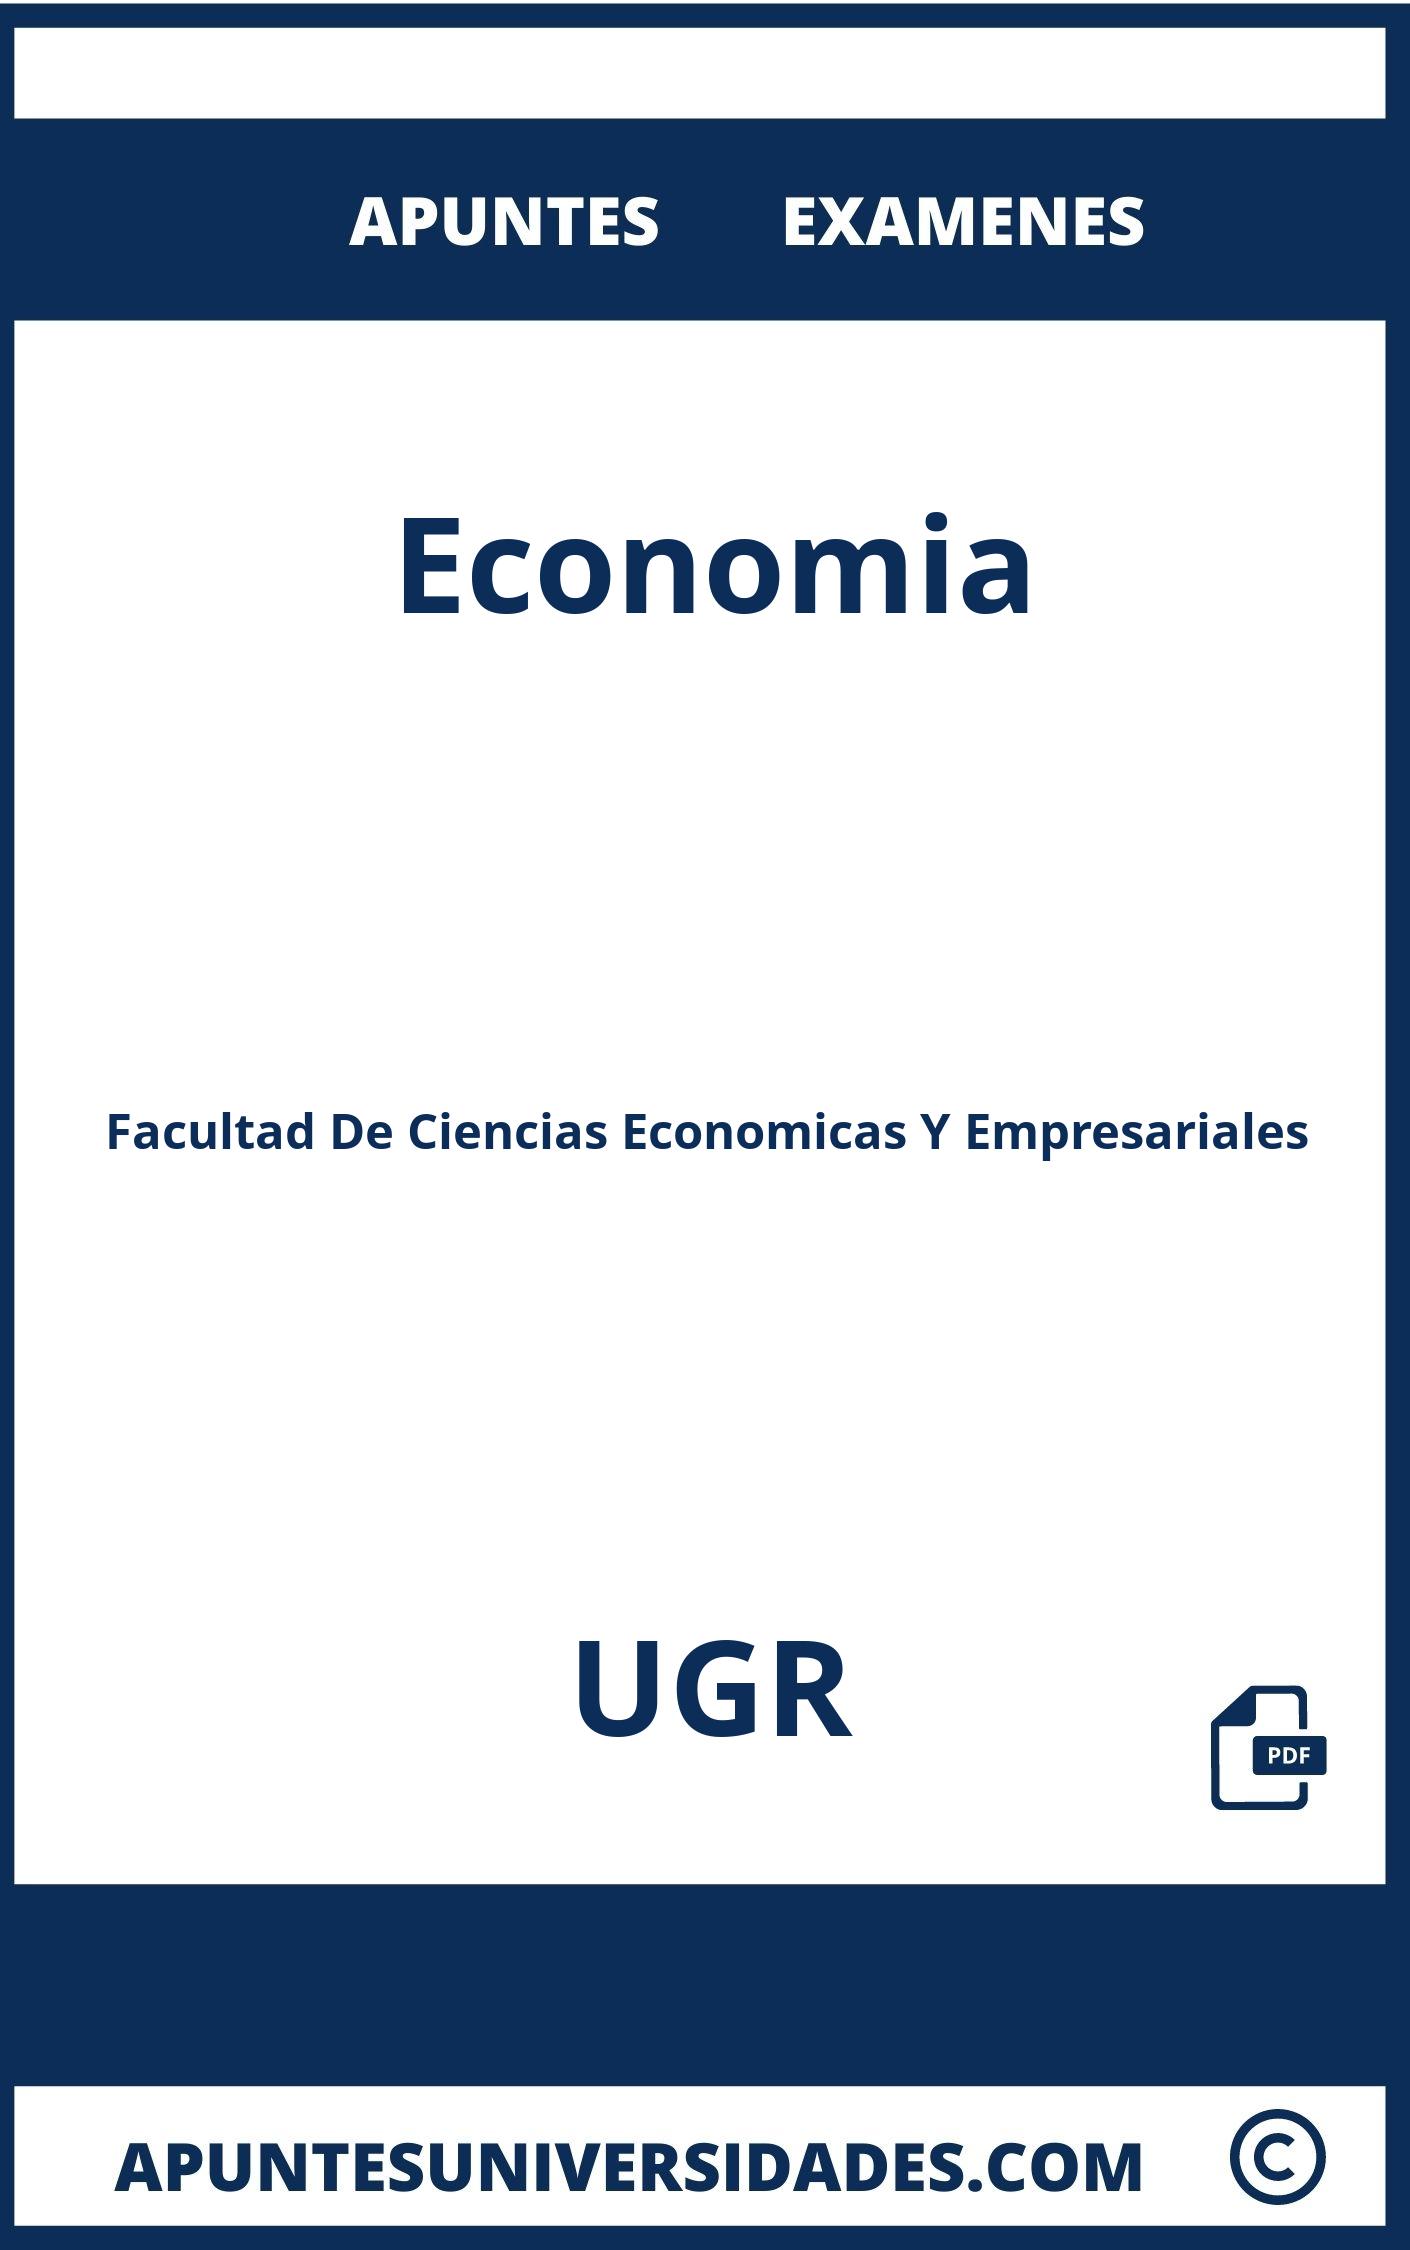 Examenes y Apuntes Economia UGR